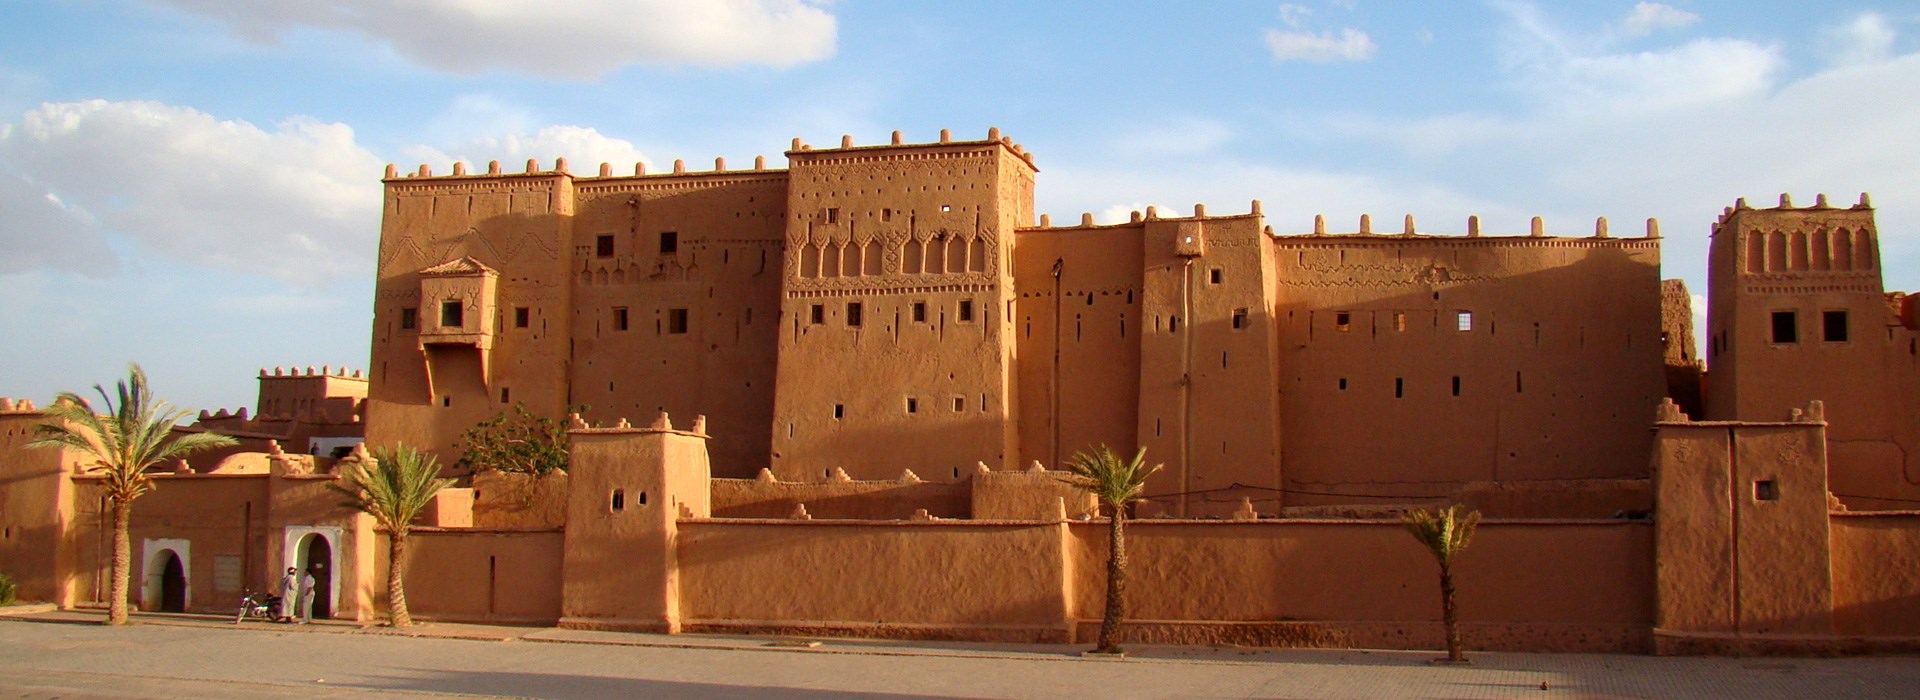 Visiter Ouarzazate - Maroc